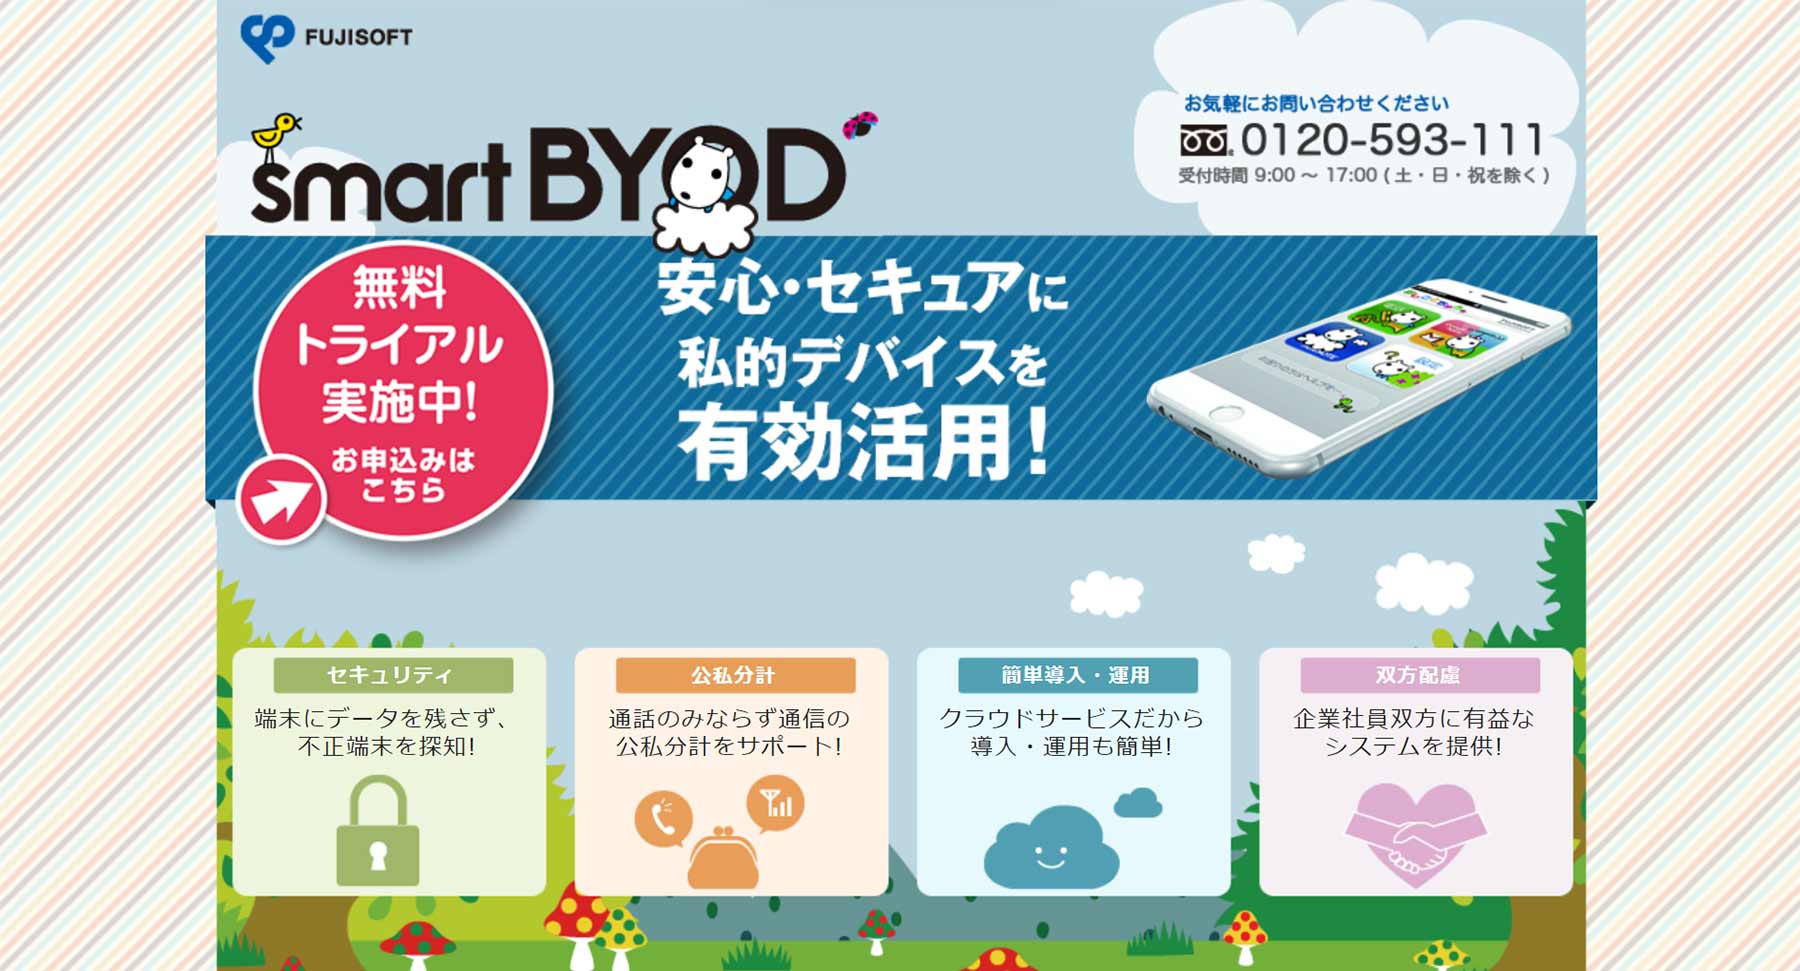 smartBYOD公式Webサイト